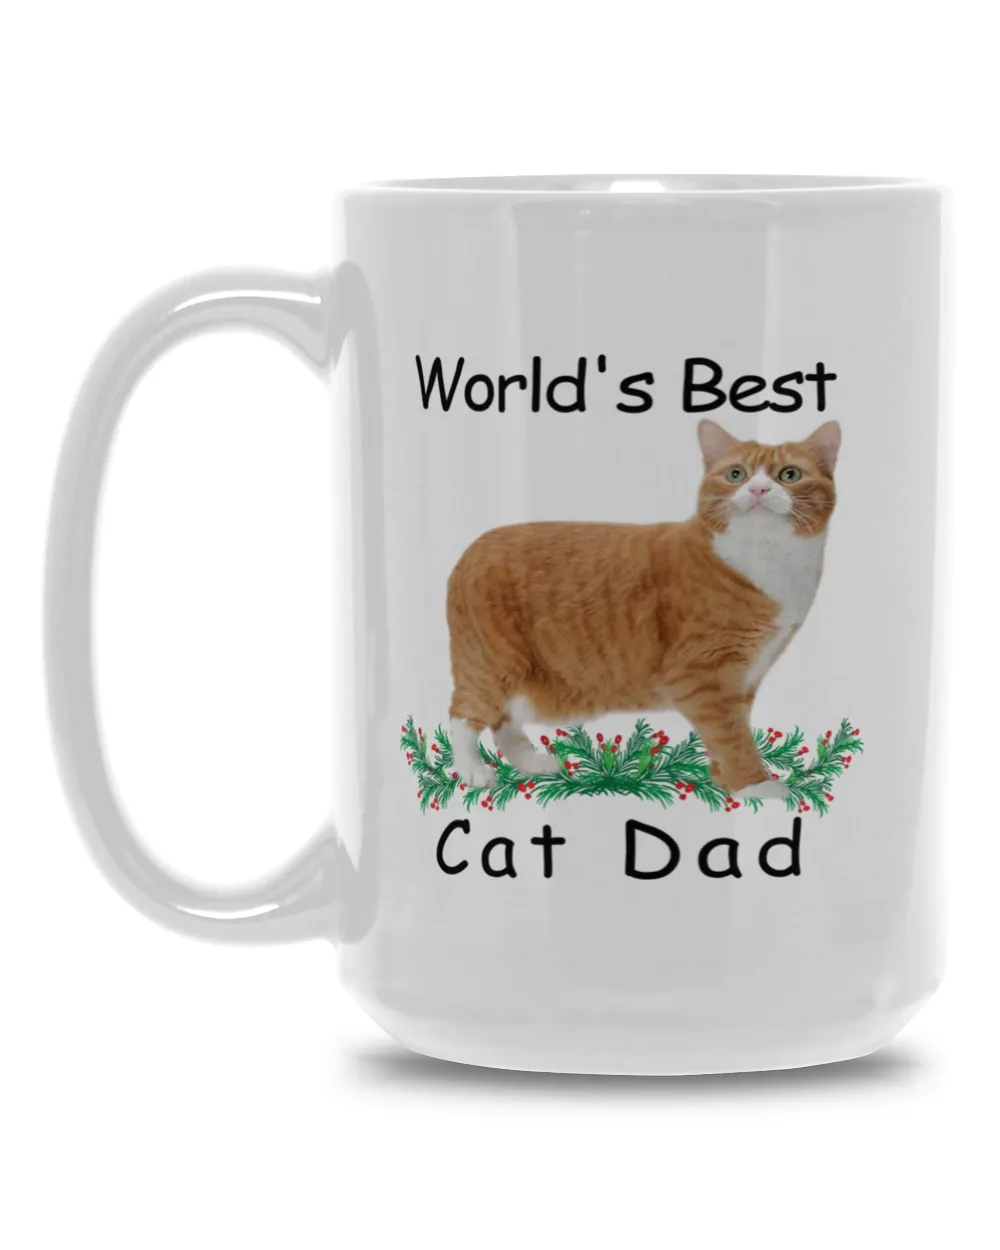 World's Best Manx Cat Red Dad